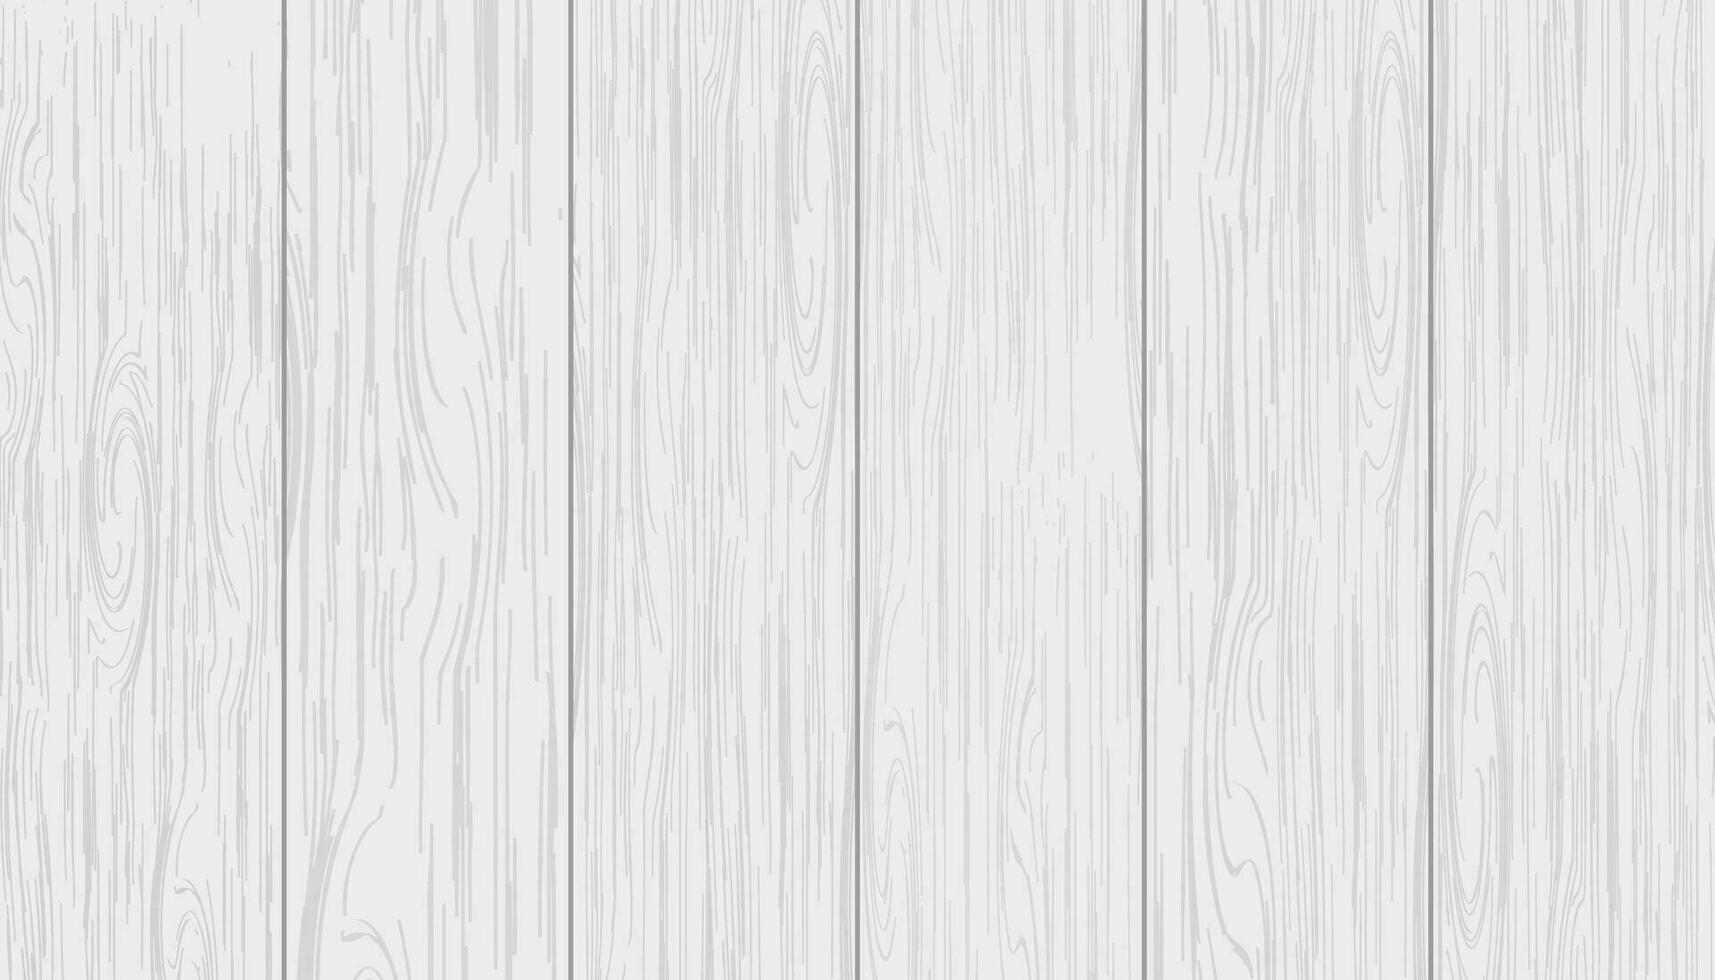 trä konsistens, vit trä- bakgrund, grå tabell topp eller styrelse för årgång skrivbord, yta mönster av floor.vector gammal trä- vägg parkett, grå timmer panel för bakgrund vektor